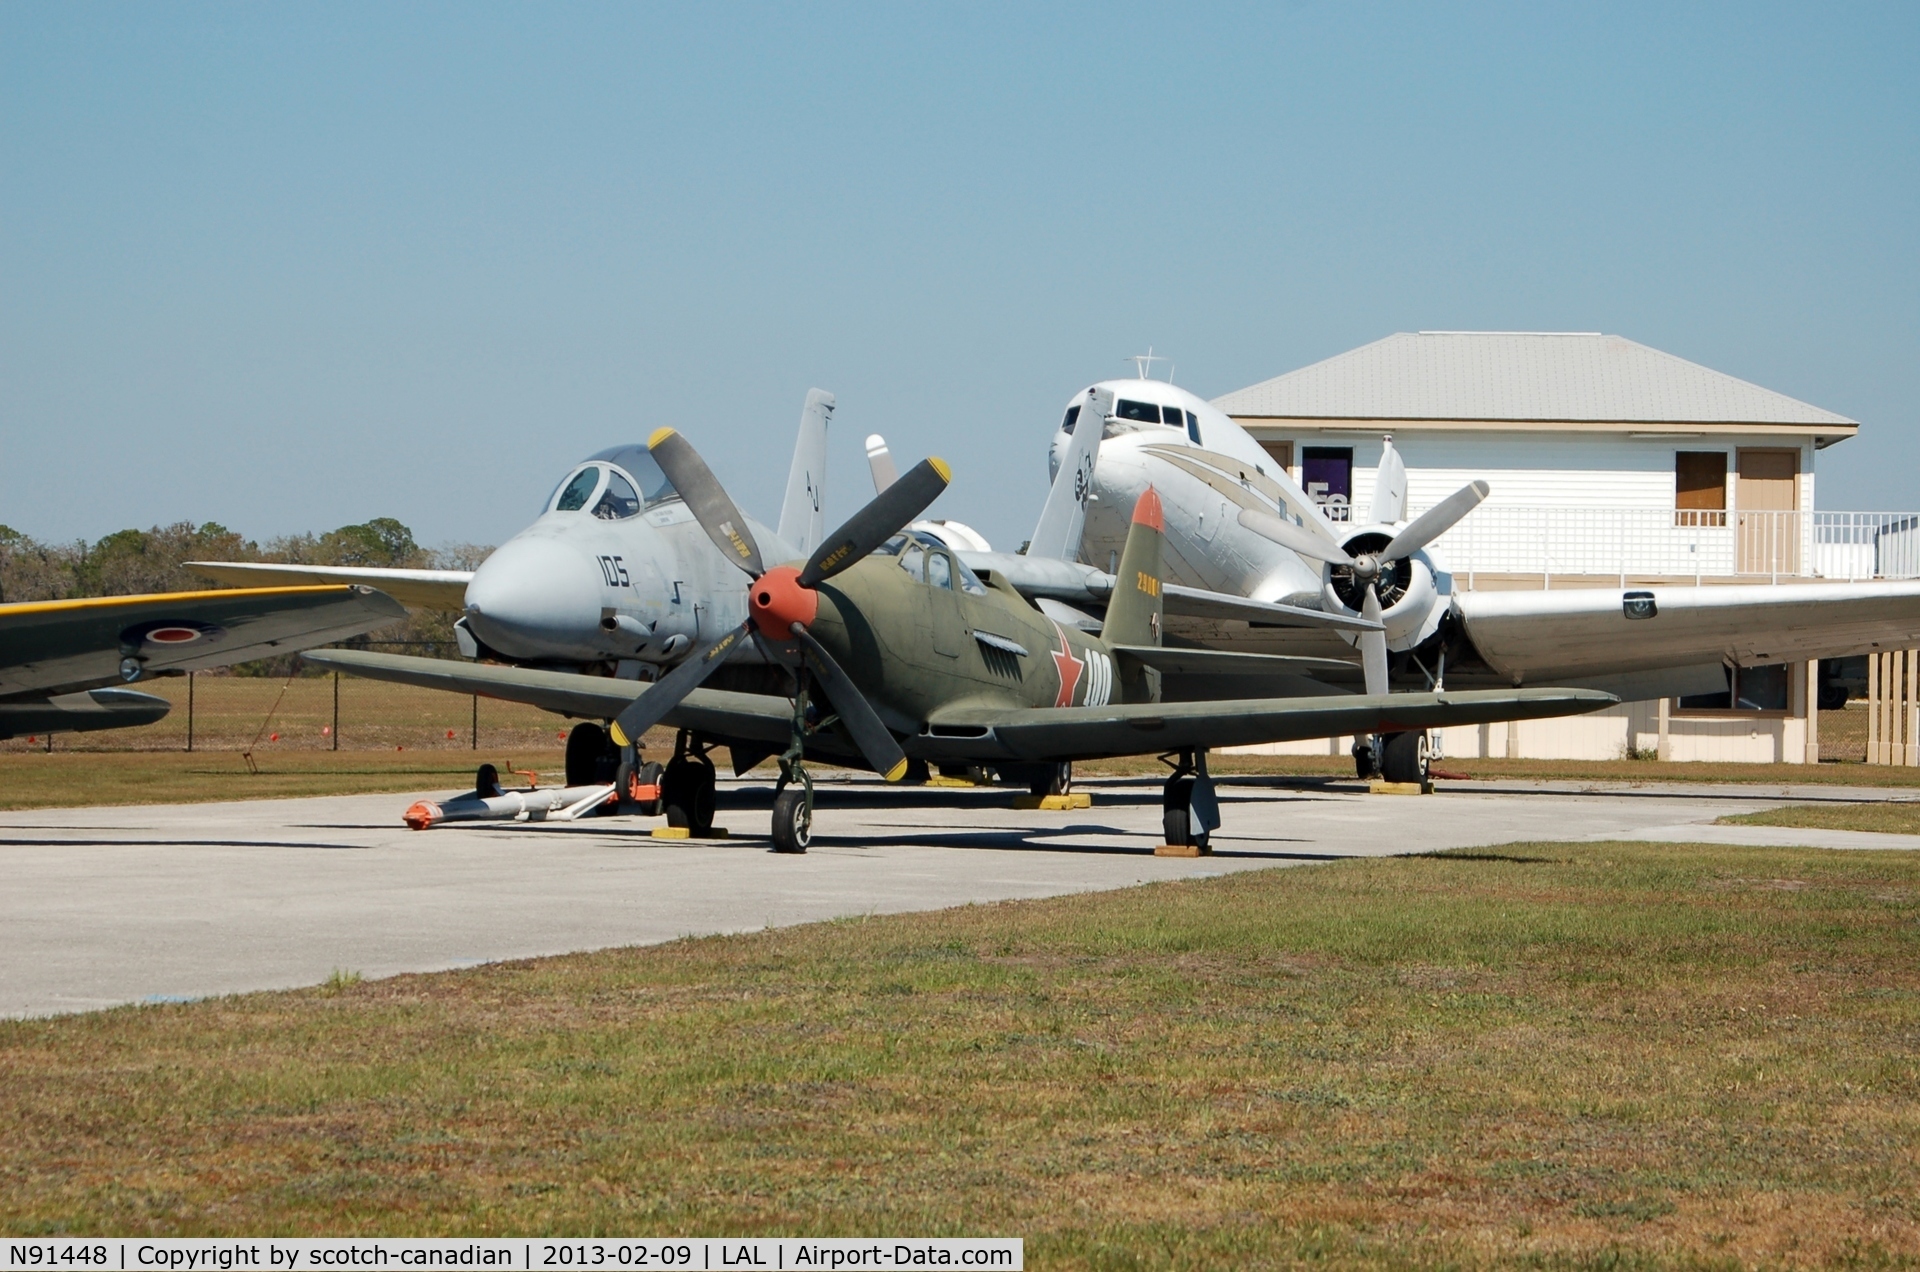 N91448, 1944 Bell P-63C Kingcobra C/N 33-766, 1944 Bell P-63C, N91448, at Lakeland Linder Regional Airport, Lakeland, FL